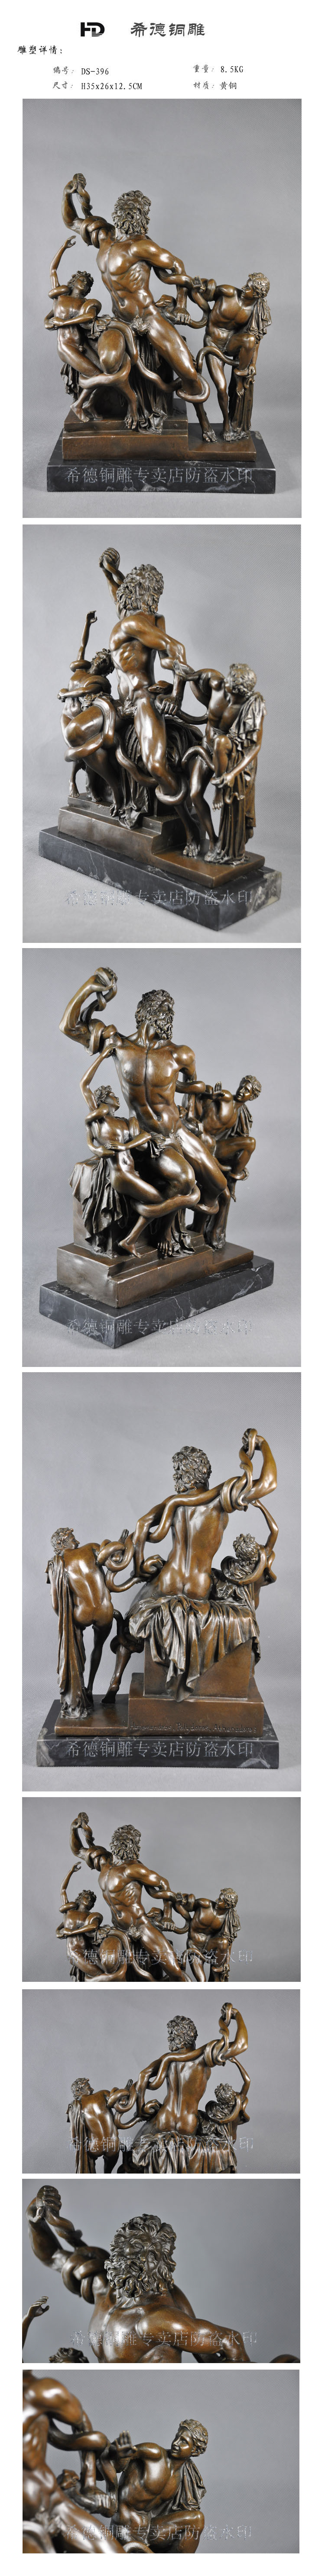 Bronze sculpture, copper sculpture crafts home decoration fashion famous ds-396